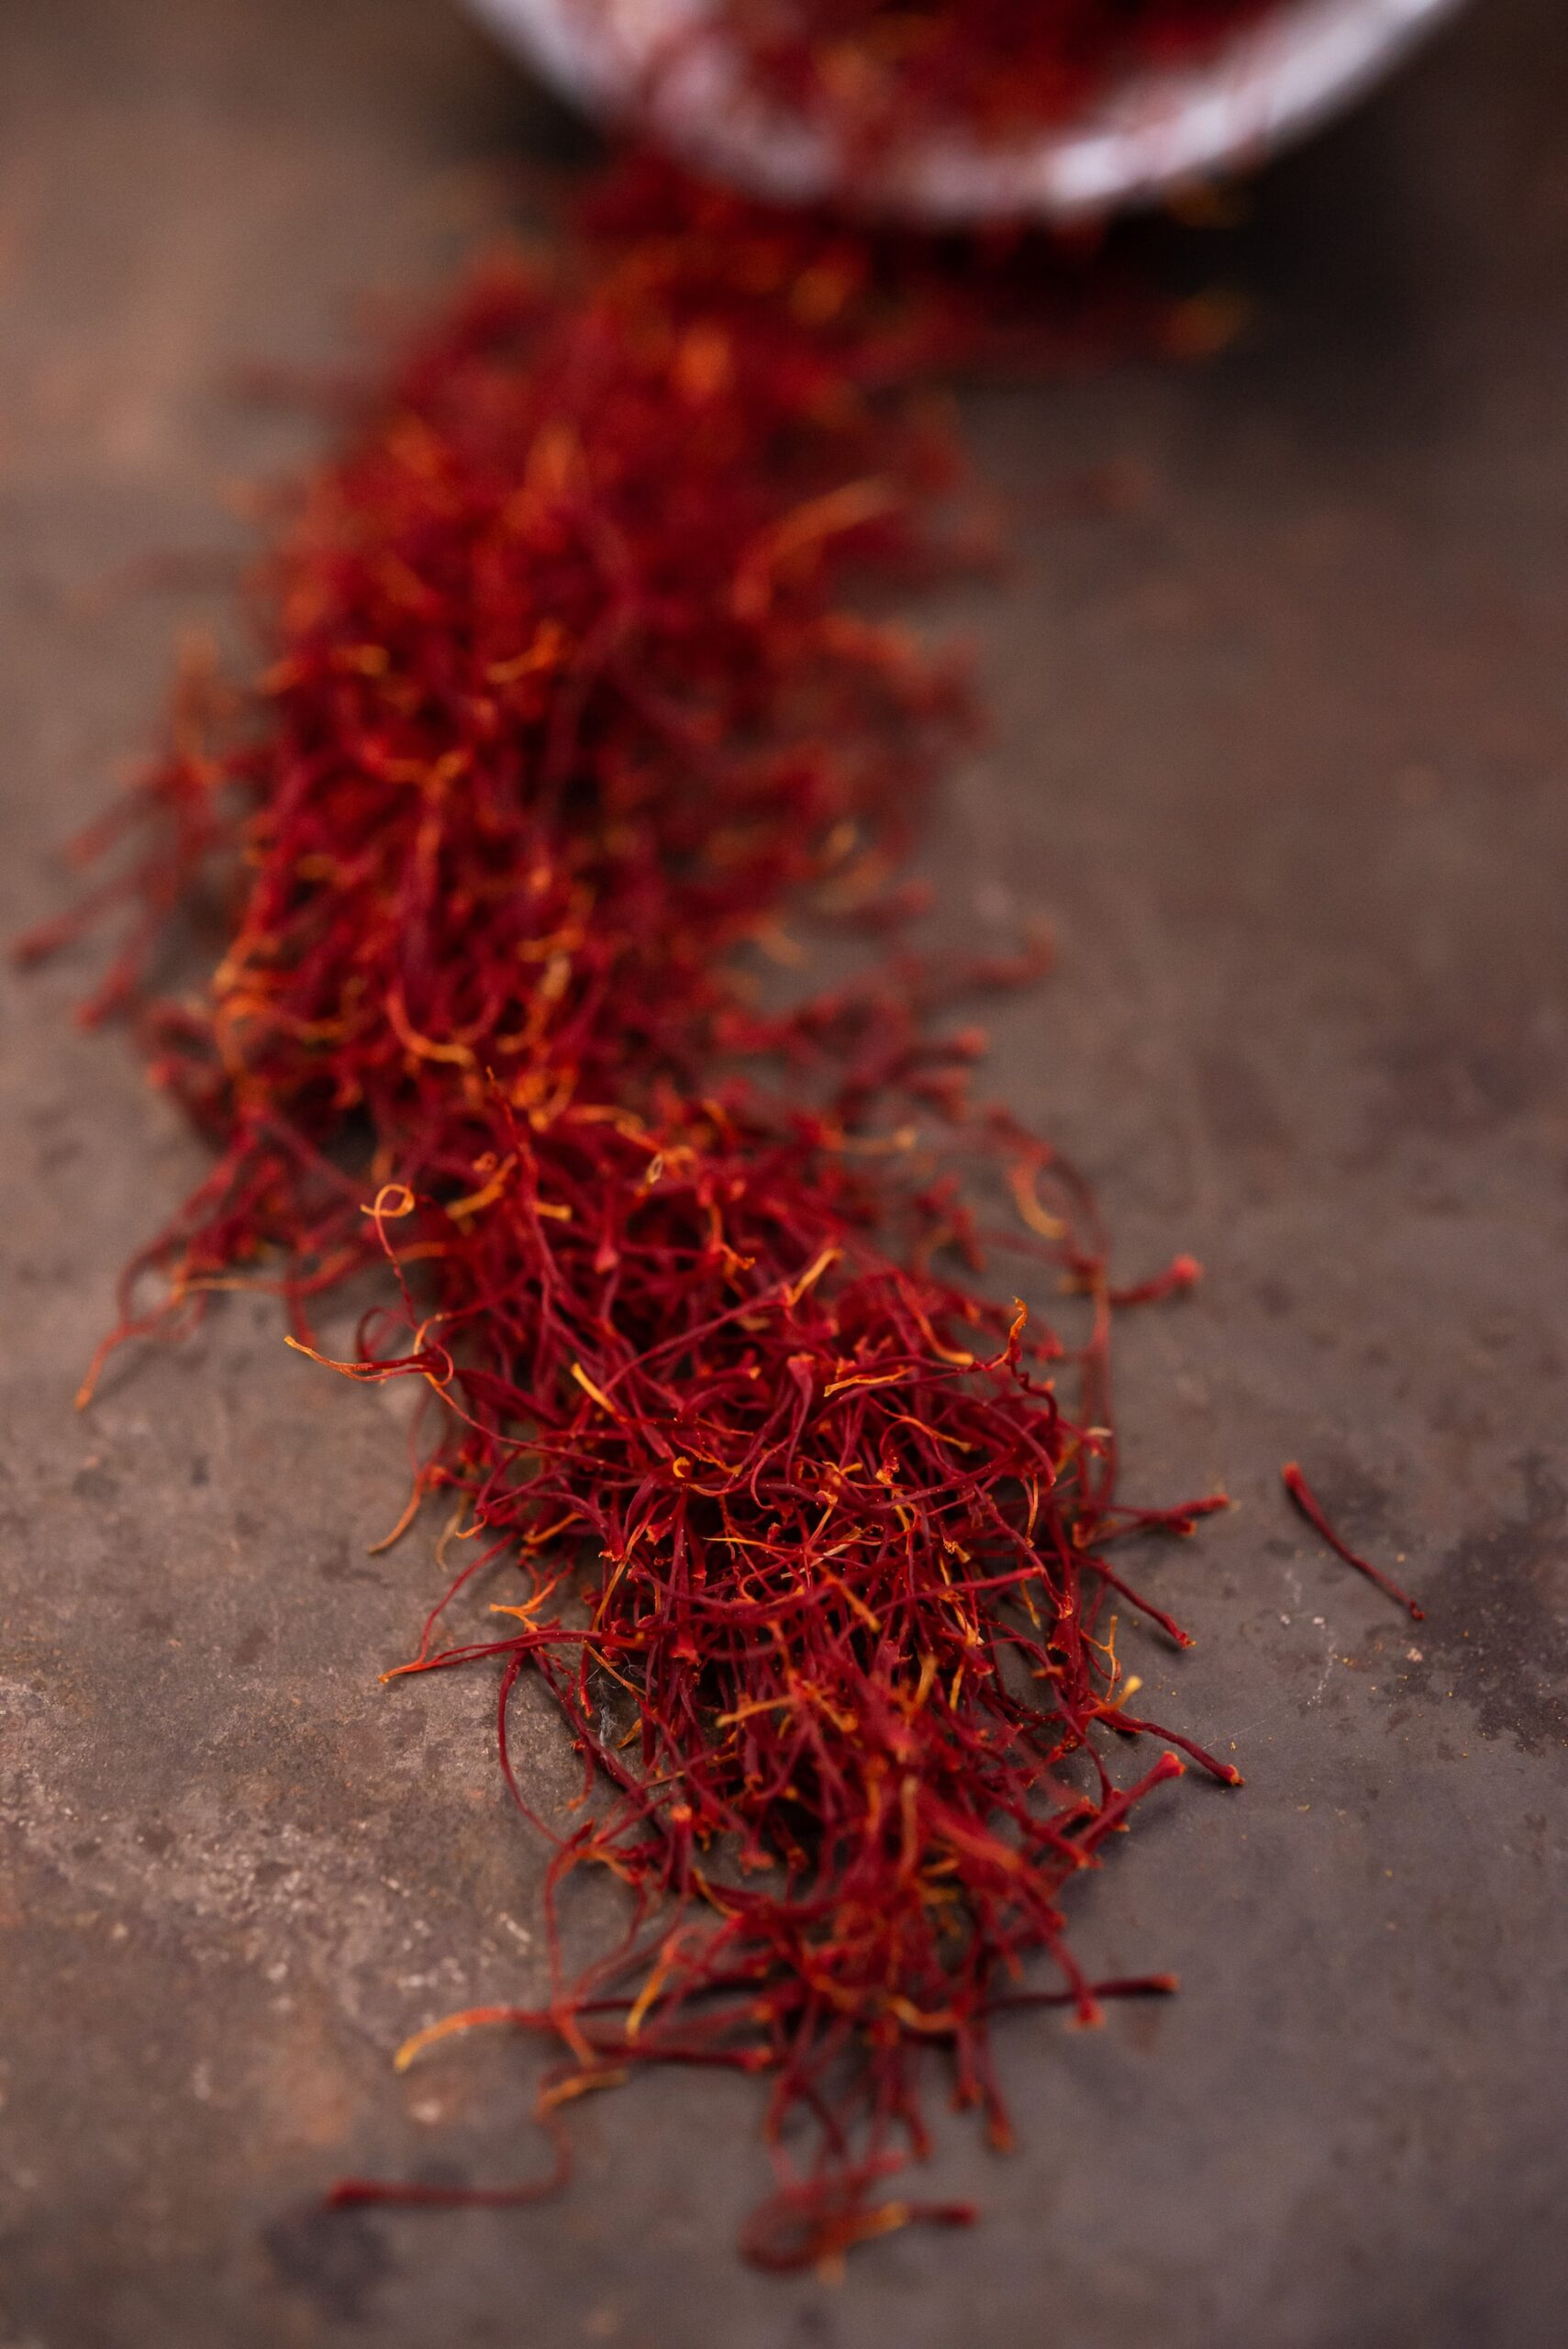 Saffron, made from the dried stigmas of Saffron crocuses